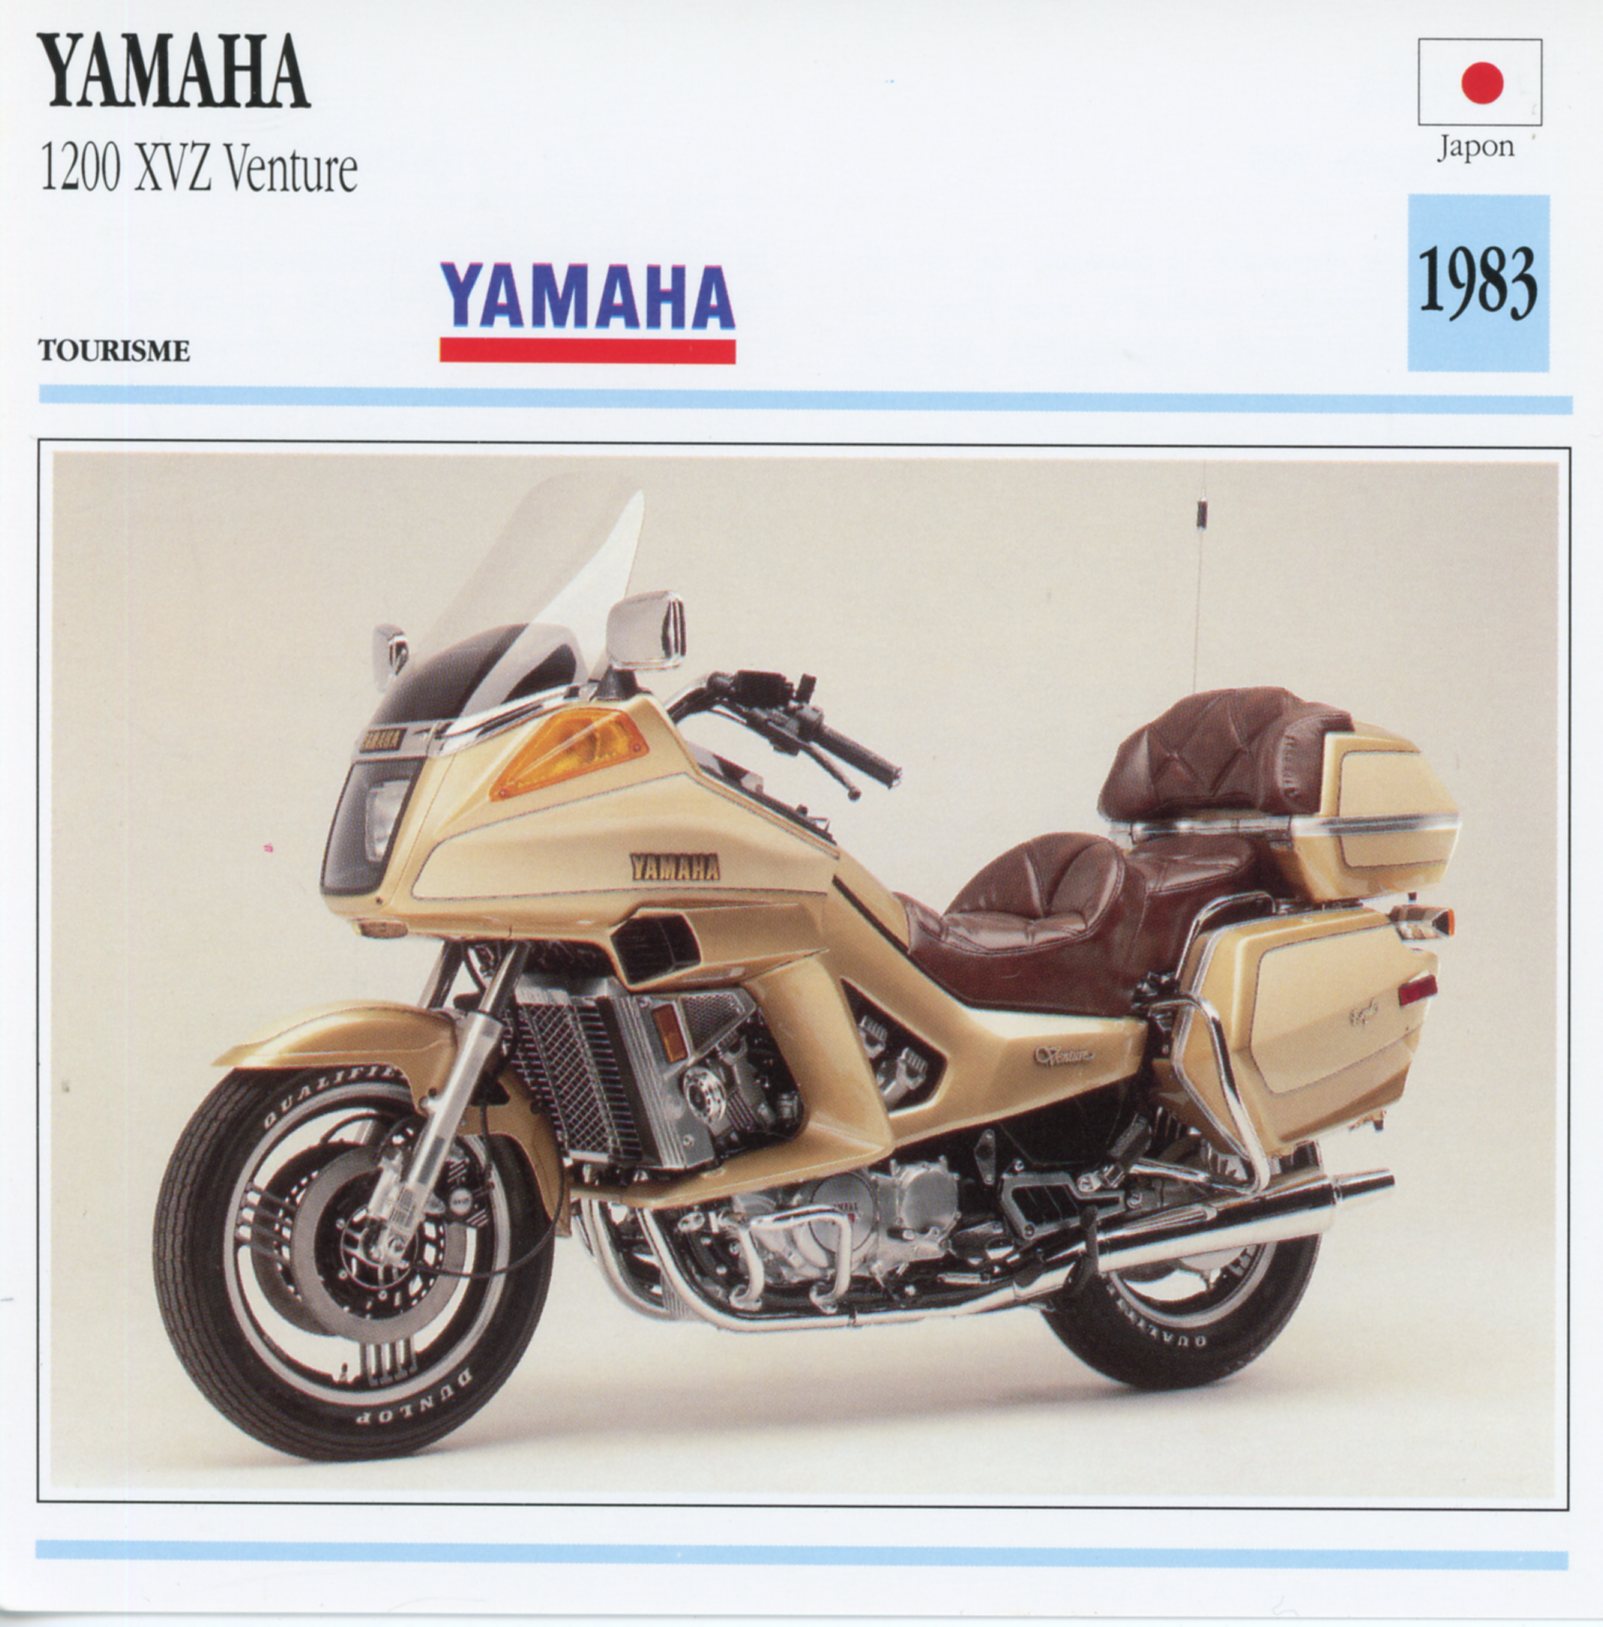 FICHE YAMAHA VENTURE 1200 XVZ - FICHE TECHNIQUE MOTO 1200XVZ